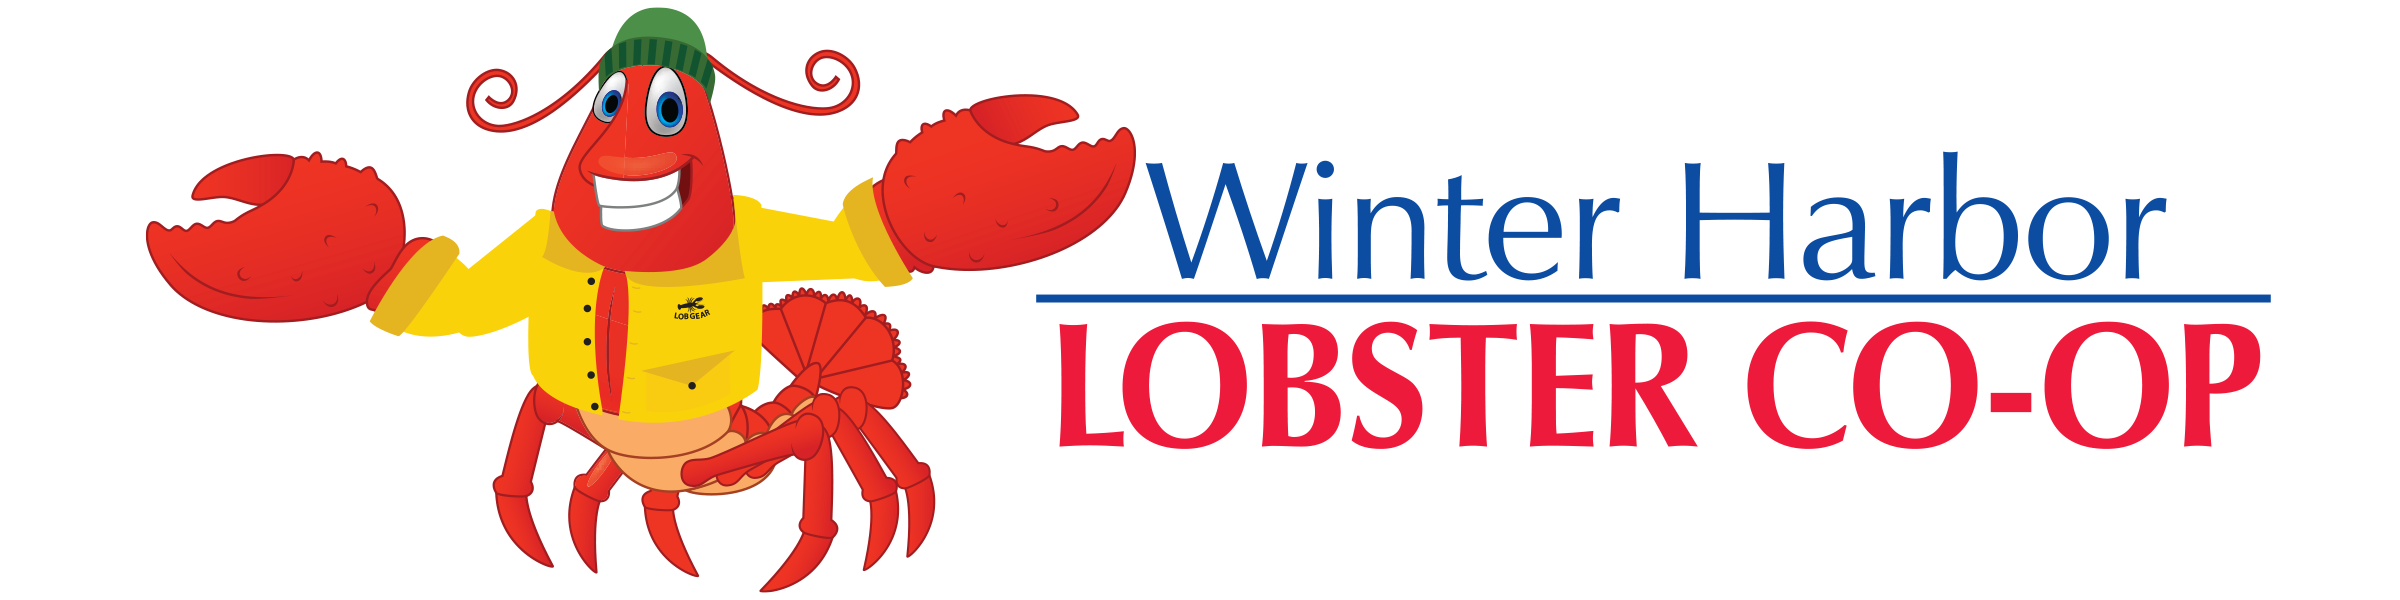 Winter Harbor Lobster Co-op